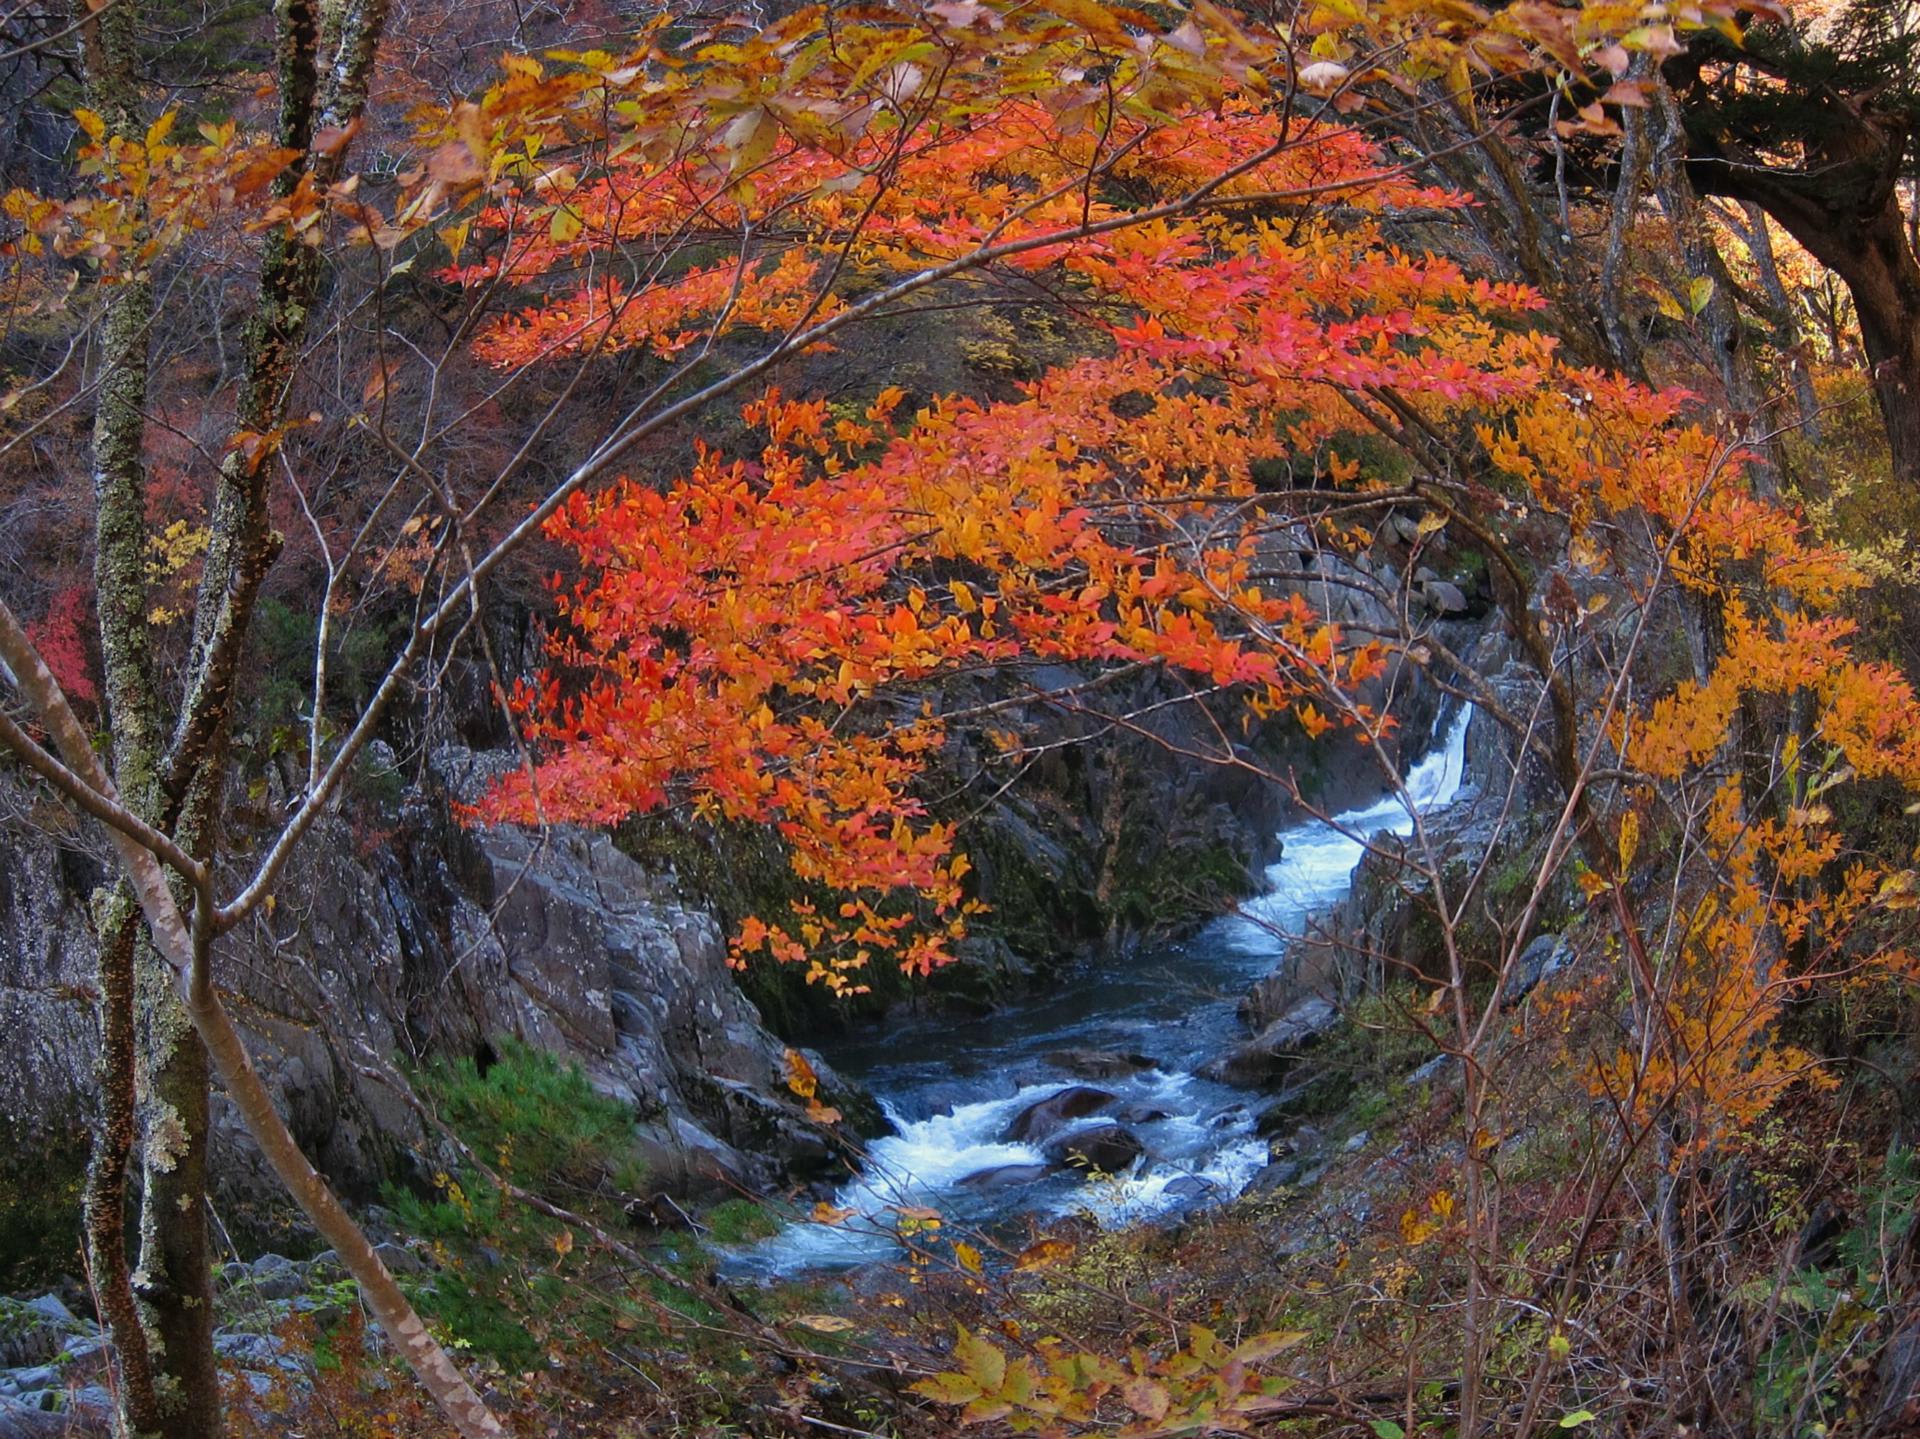 秋の籠場の滝 いわき 夏井川渓谷にて撮影 紅葉と滝 月例 フォトコン奮闘記